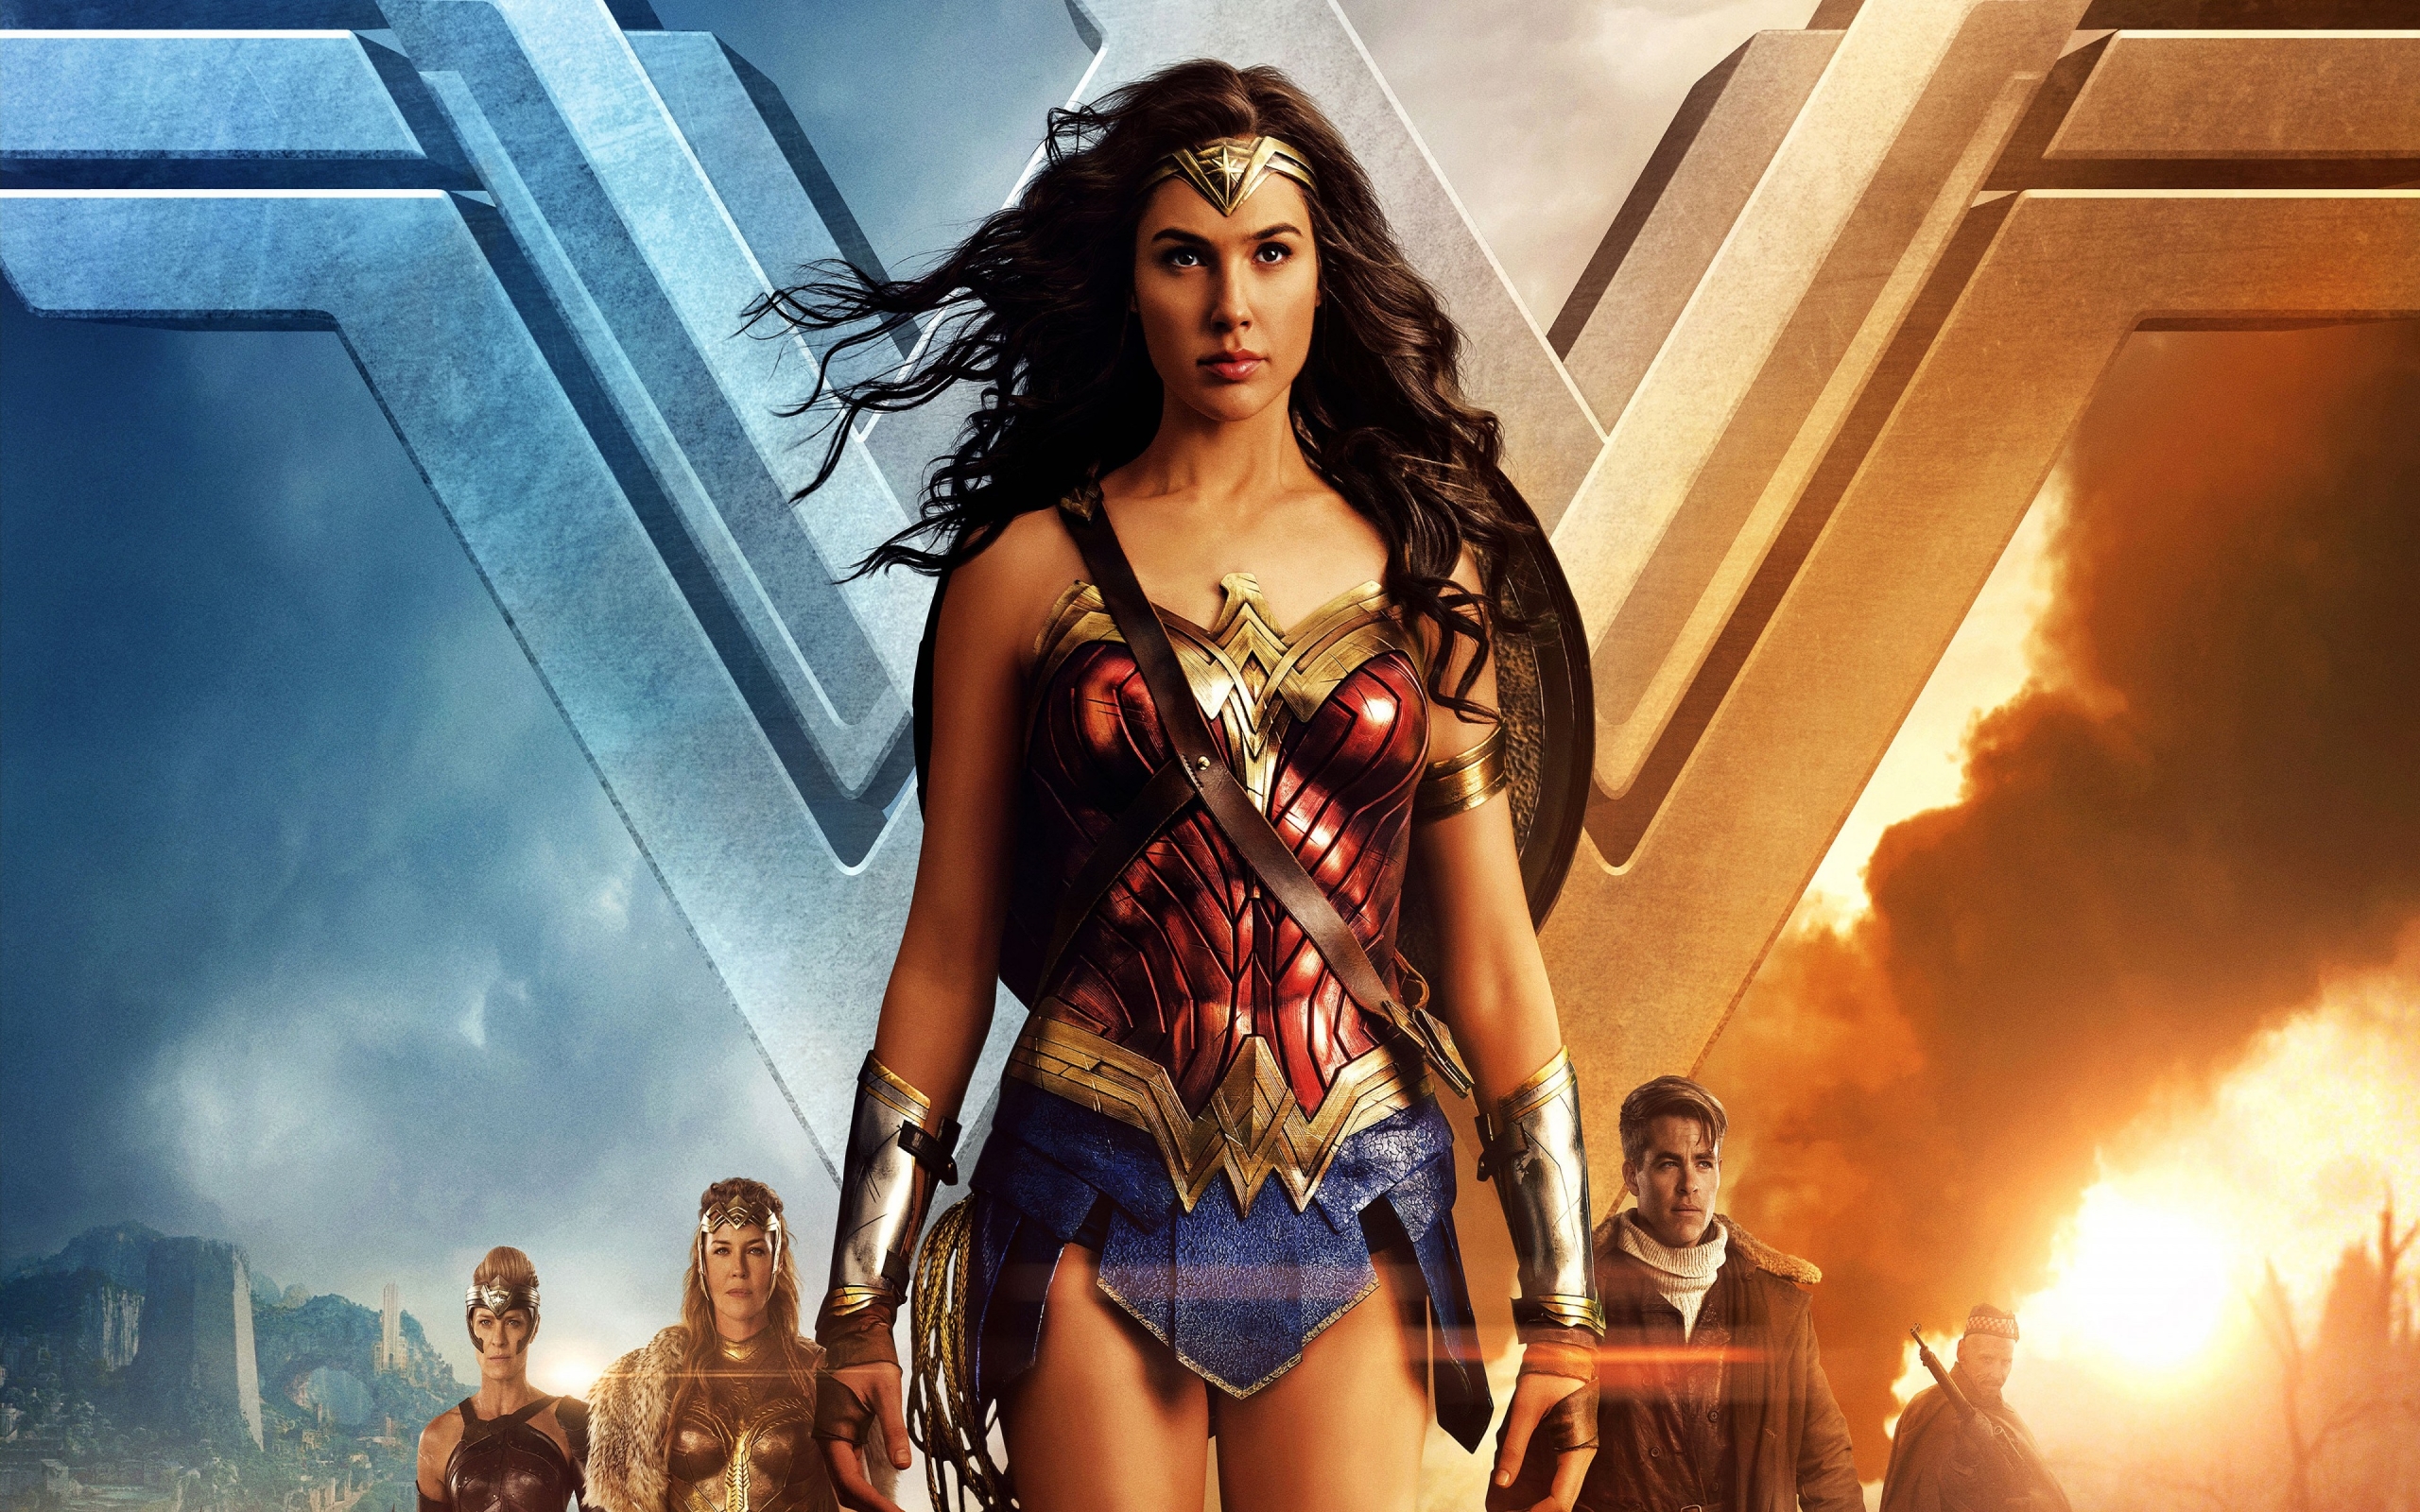 Wonder Woman Gal Gadot 2017 for 2560 x 1600 widescreen resolution